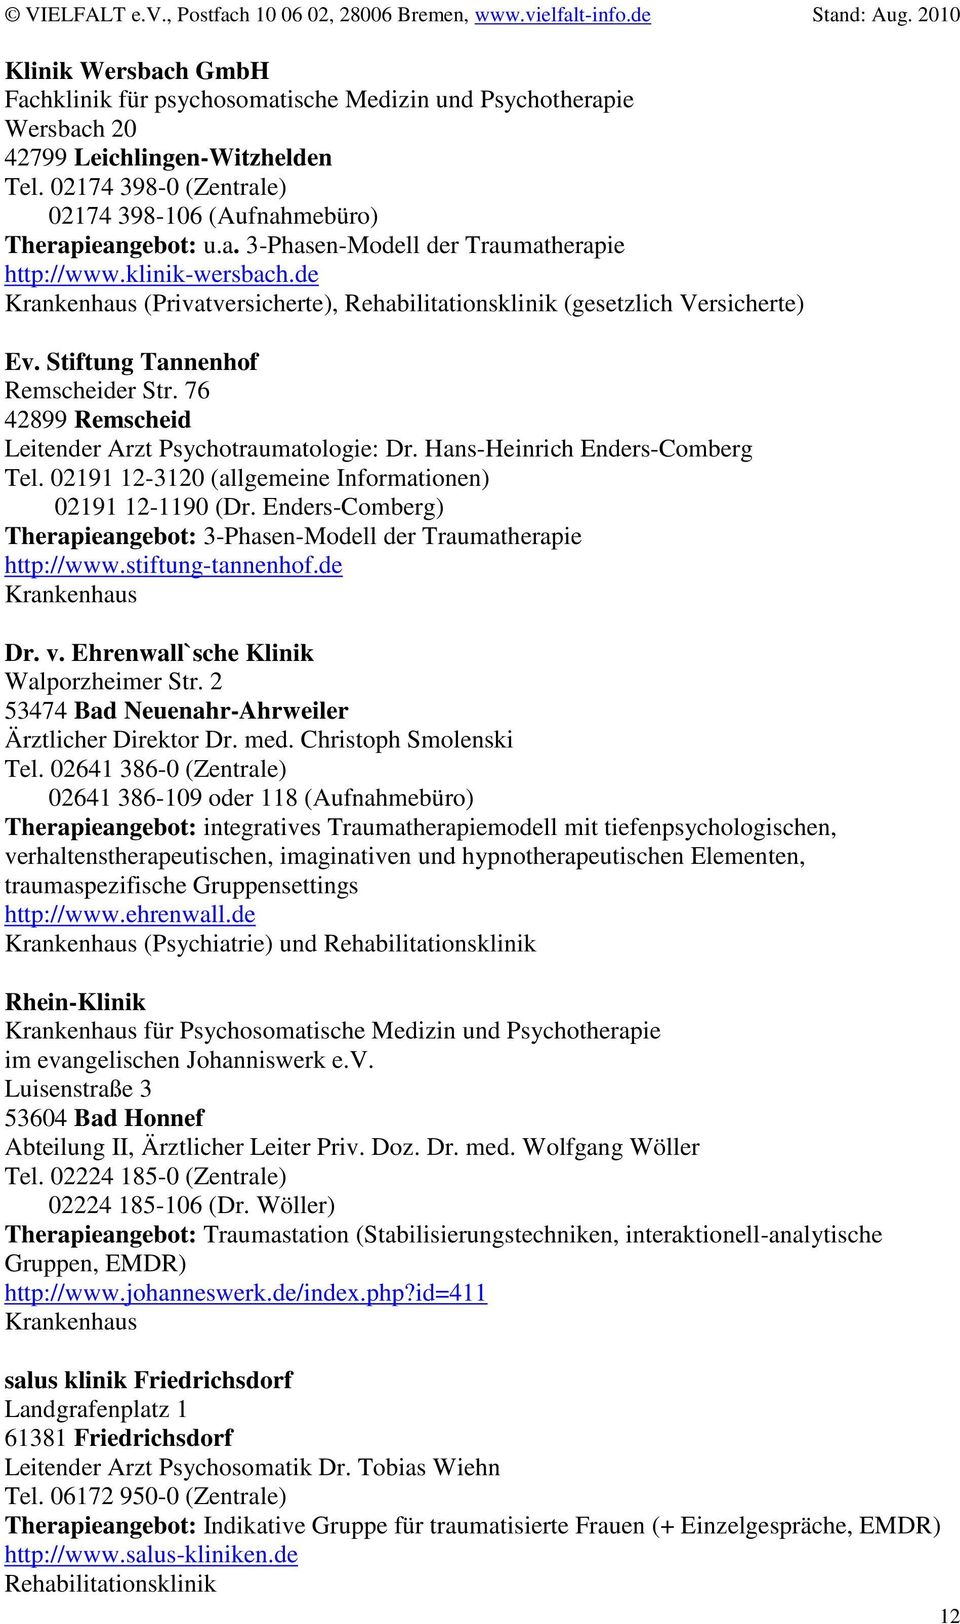 02191 12-3120 (allgemeine Informationen) 02191 12-1190 (Dr. Enders-Comberg) Therapieangebot: 3-Phasen-Modell der Traumatherapie http://www.stiftung-tannenhof.de Dr. v.